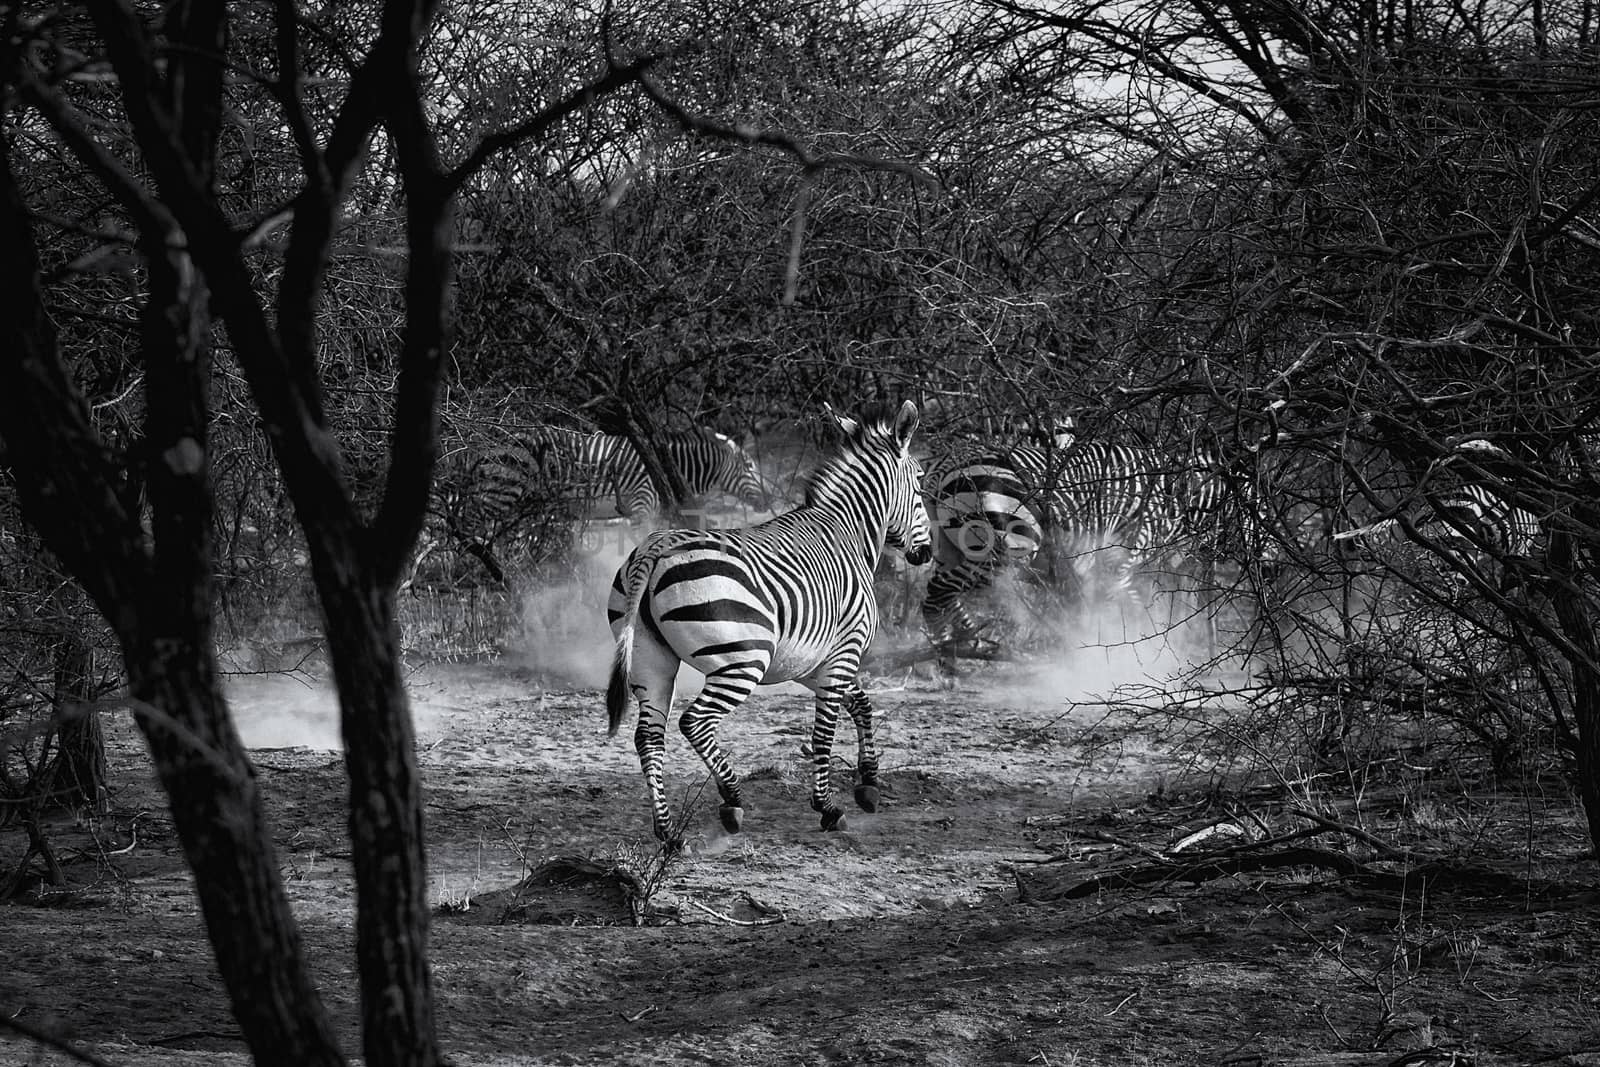 Burchell's zebra in Namibia by magicbones